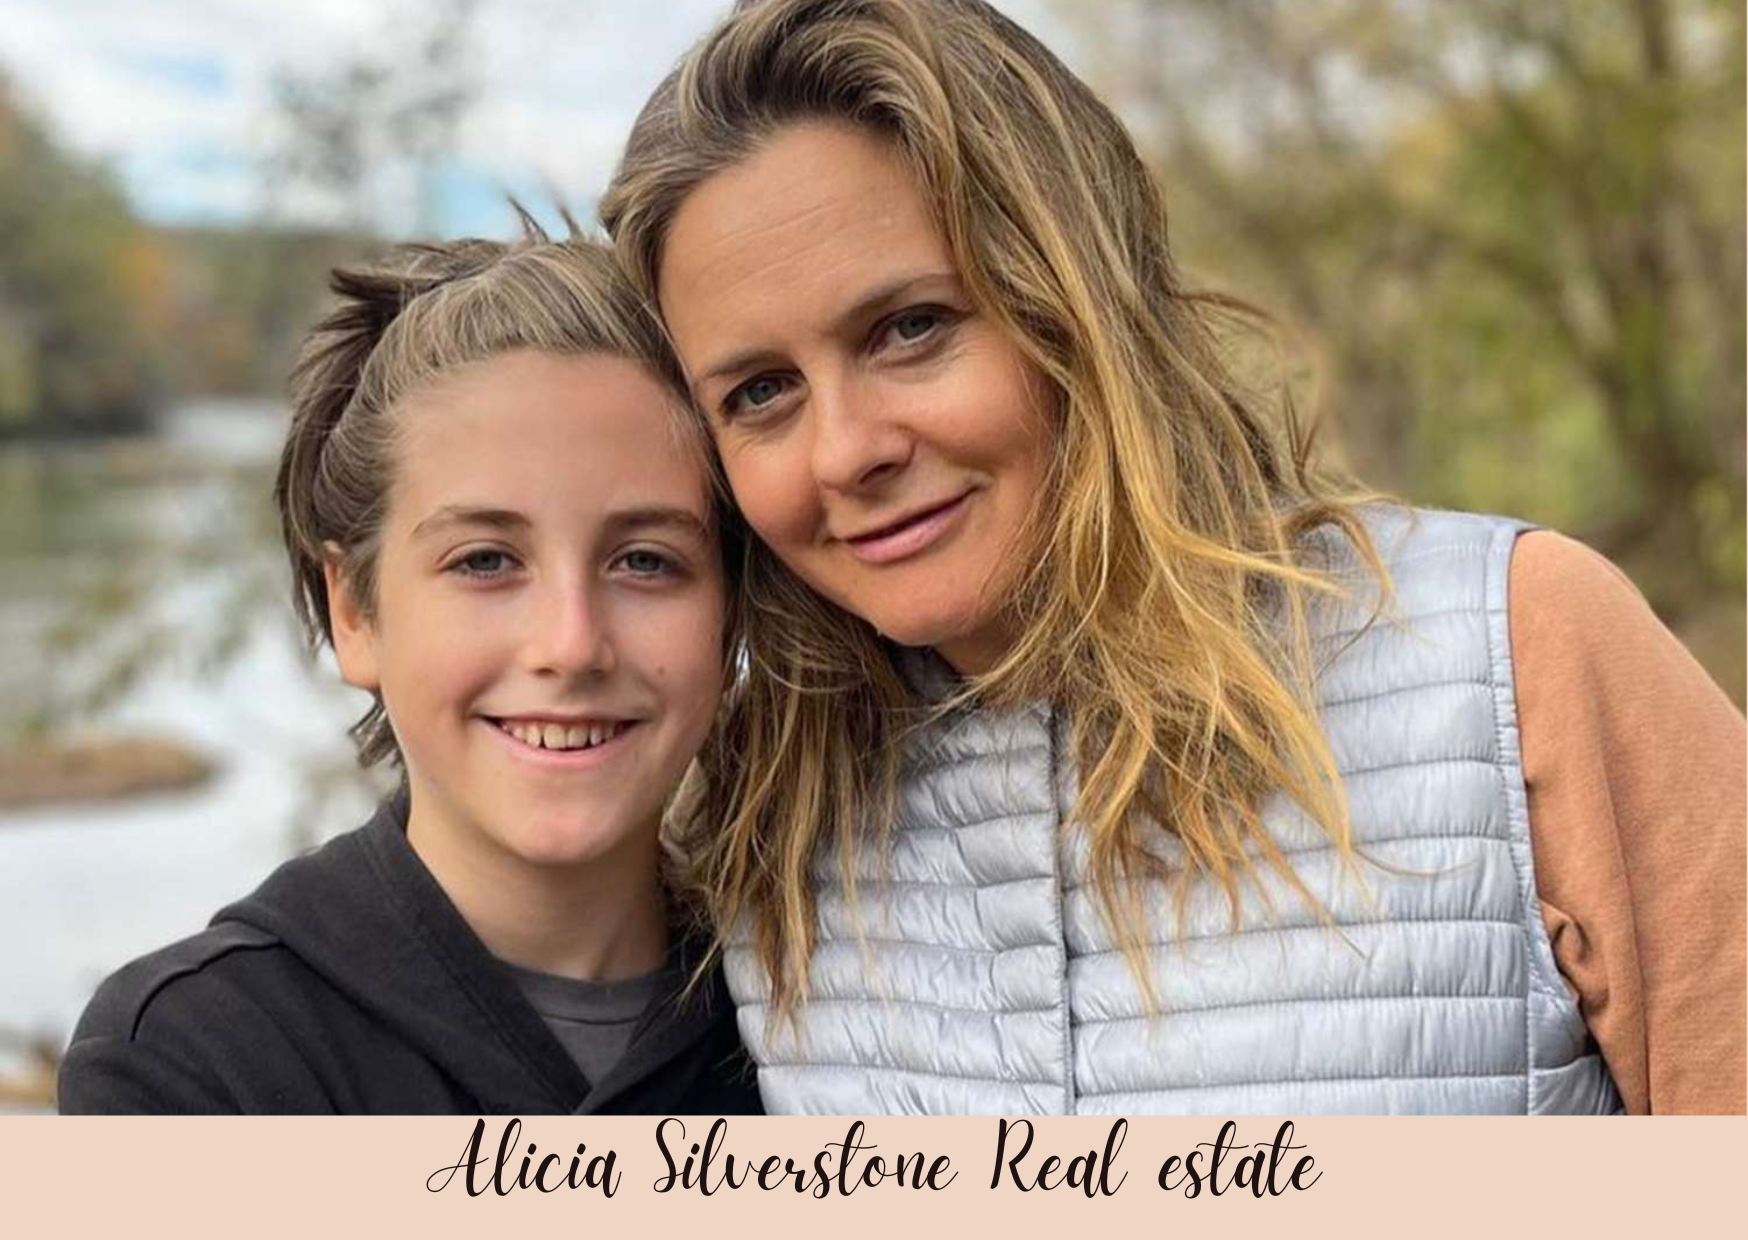 Alicia Silverstone Real estate